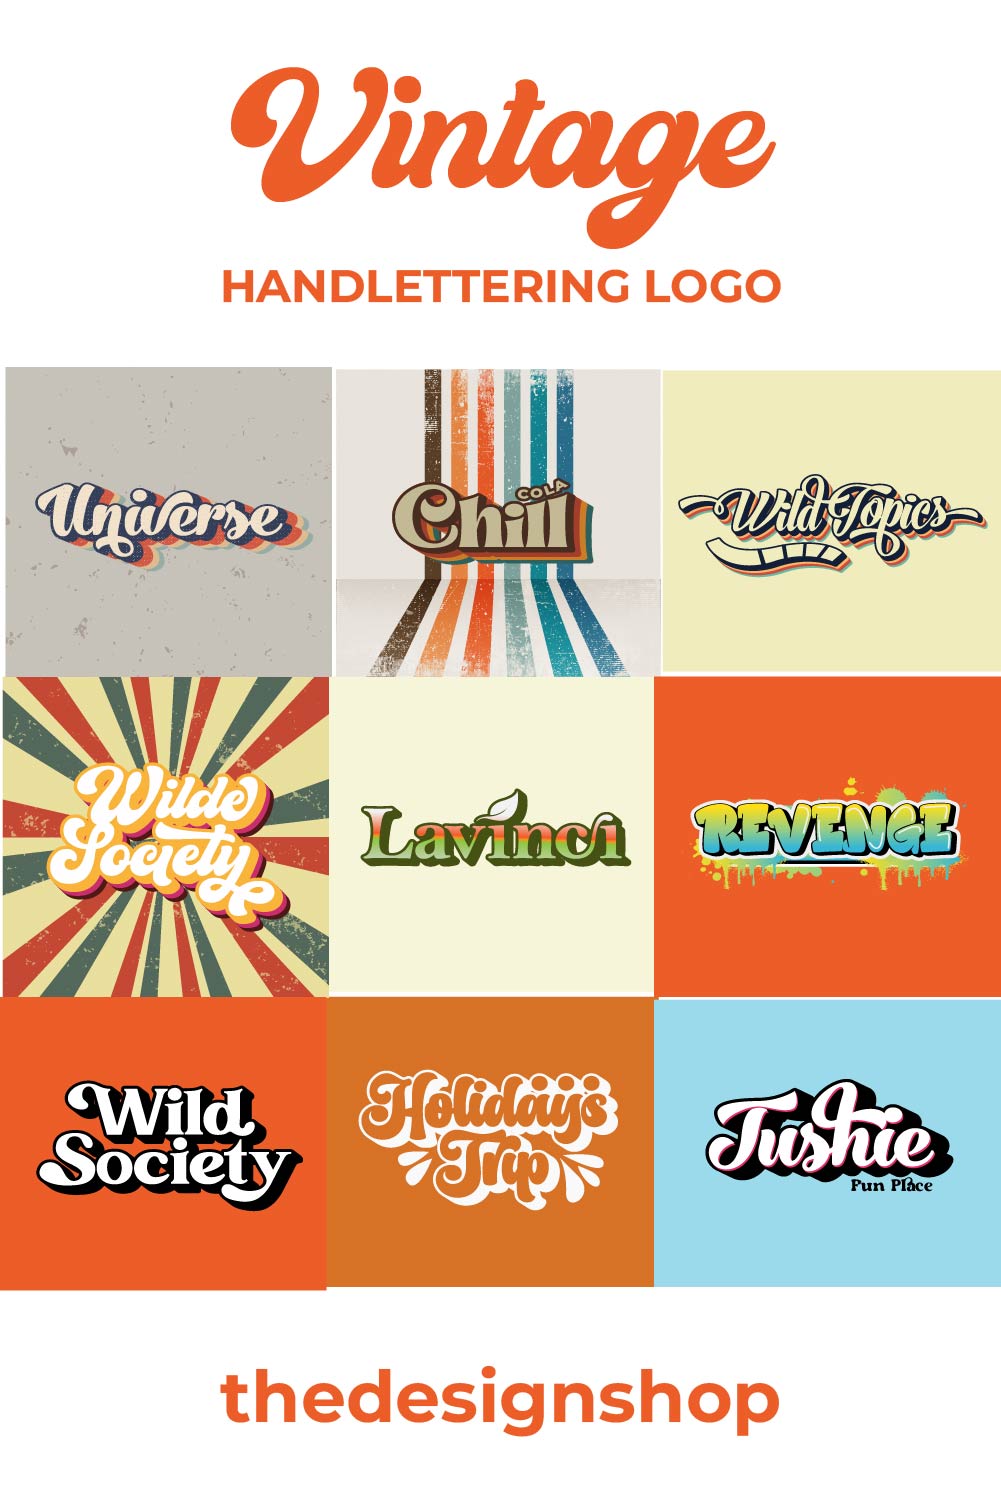 9 Vintage handlettering logos bundle pinterest preview image.